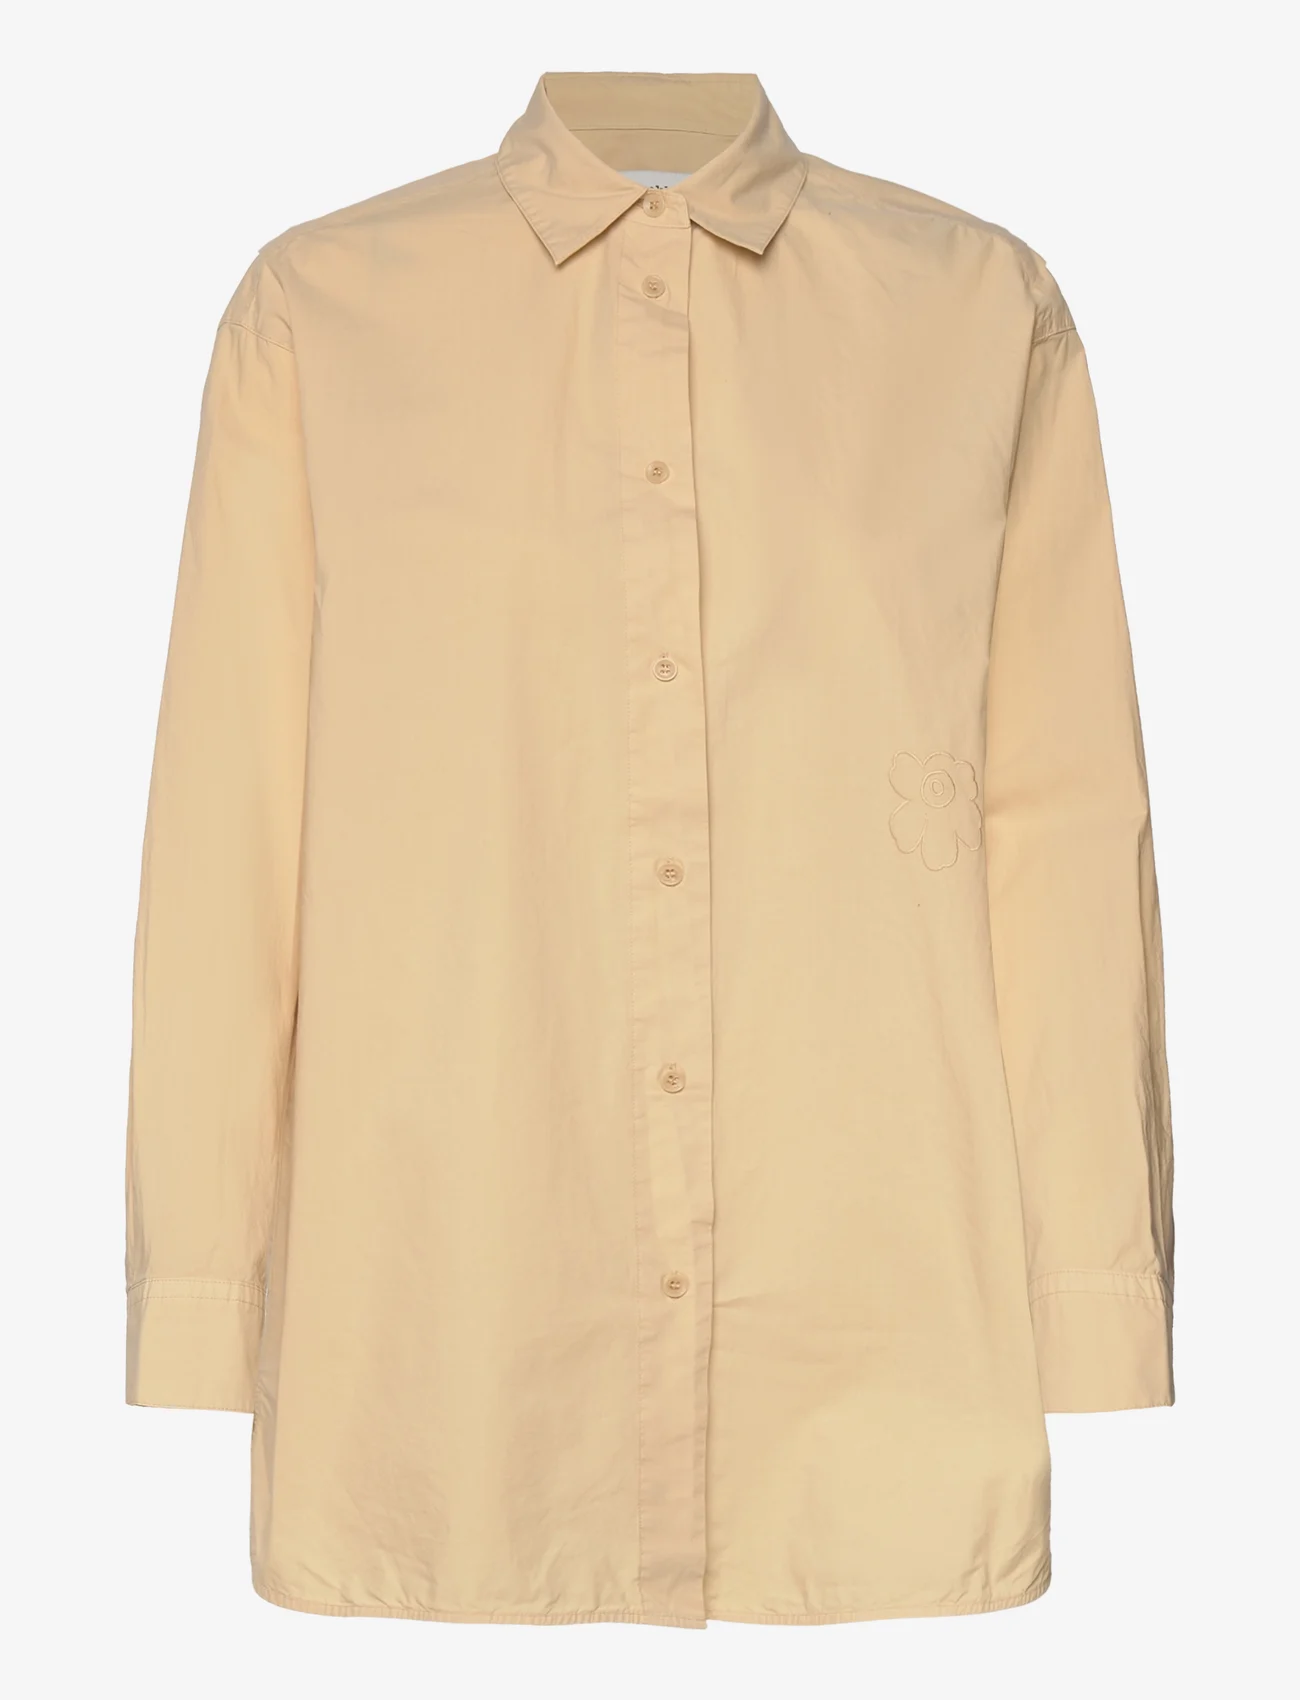 Marimekko - GRISTE SOLID - long-sleeved shirts - beige - 0